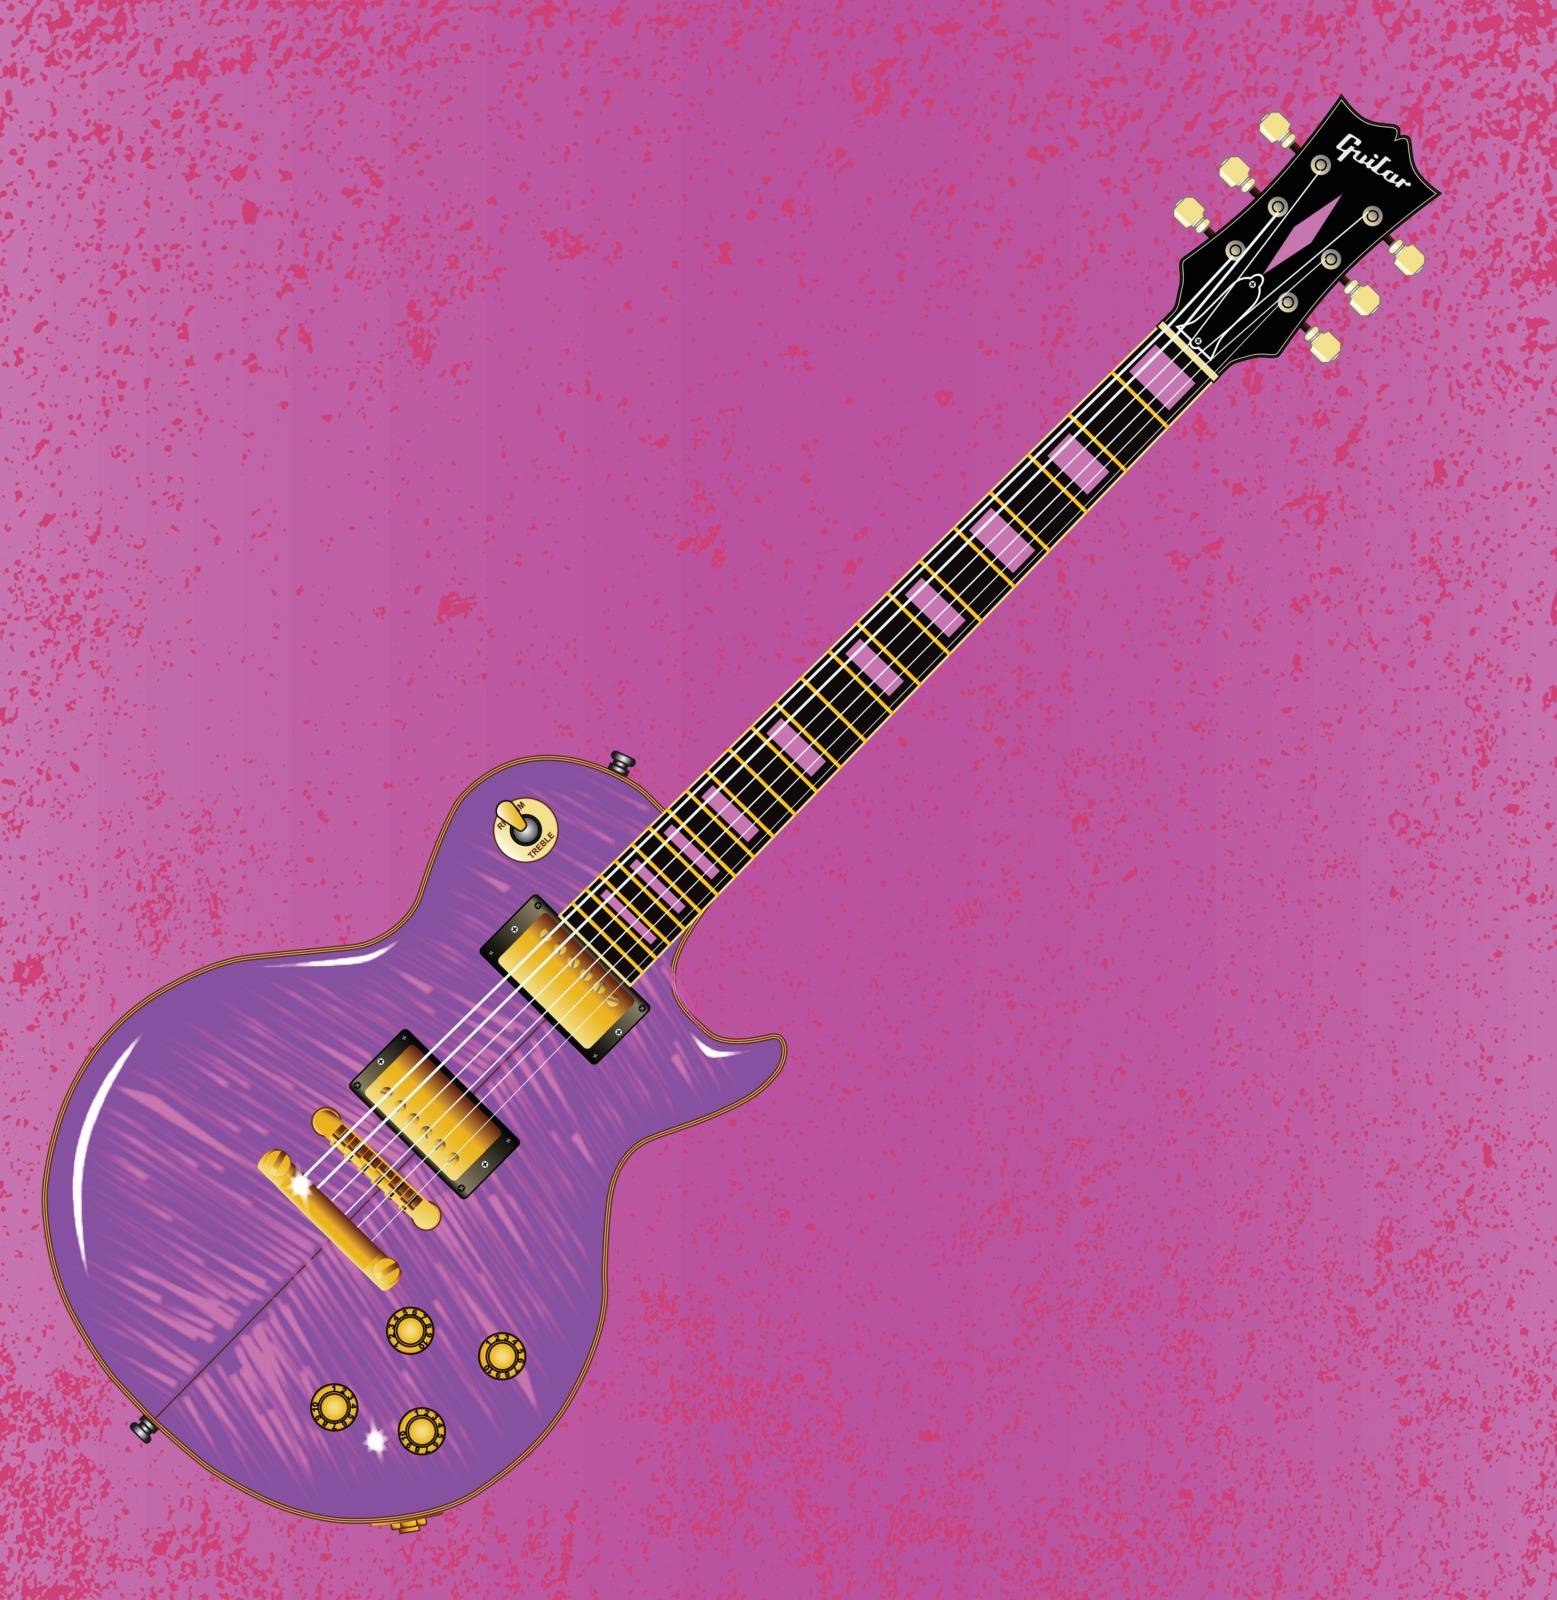 Pink Guitar Grunge by Bigalbaloo